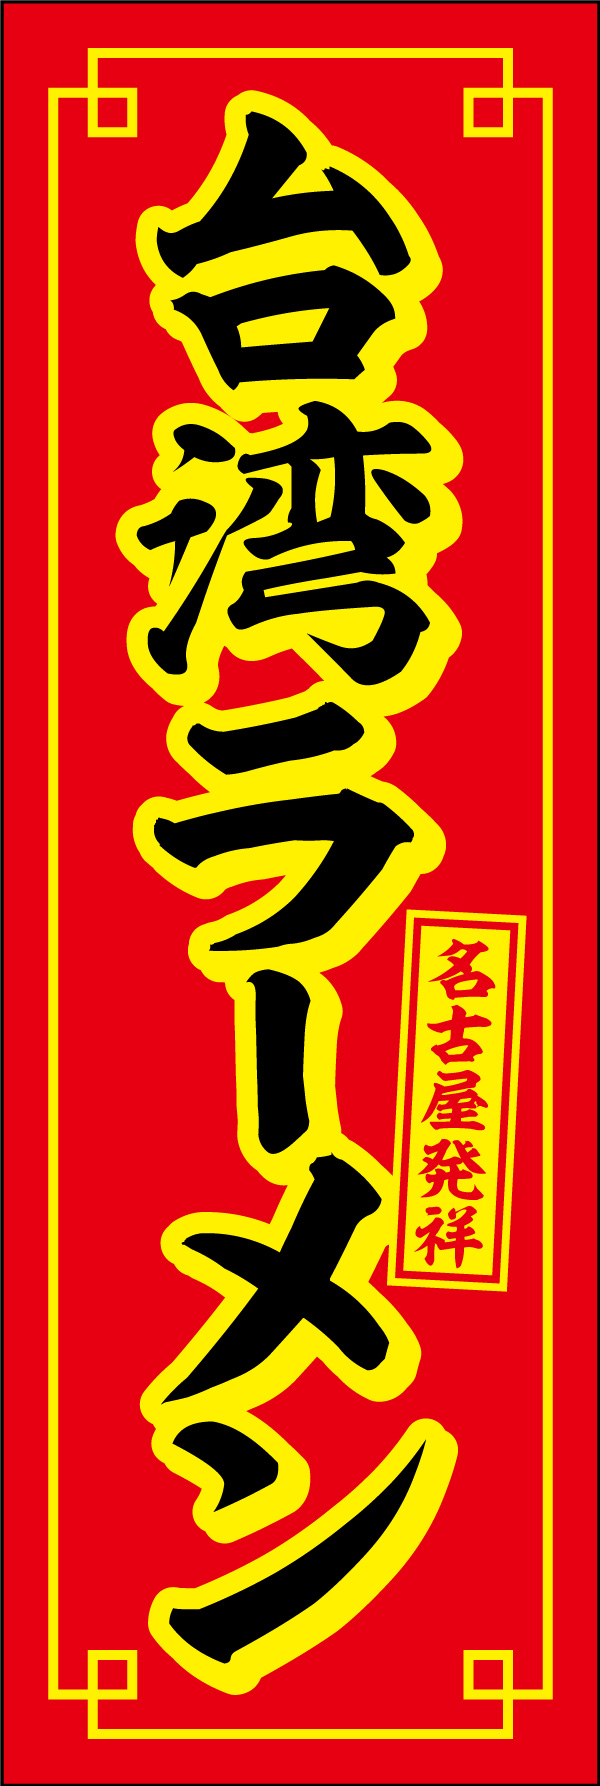 台湾ラーメン 02 「台湾ラーメン」ののぼりです。台湾ラーメン発祥の名古屋でよく使用されているカラーリングを意識し、本場の味が楽しめるお店のアイコンとしてデザインしました。(Y.M)